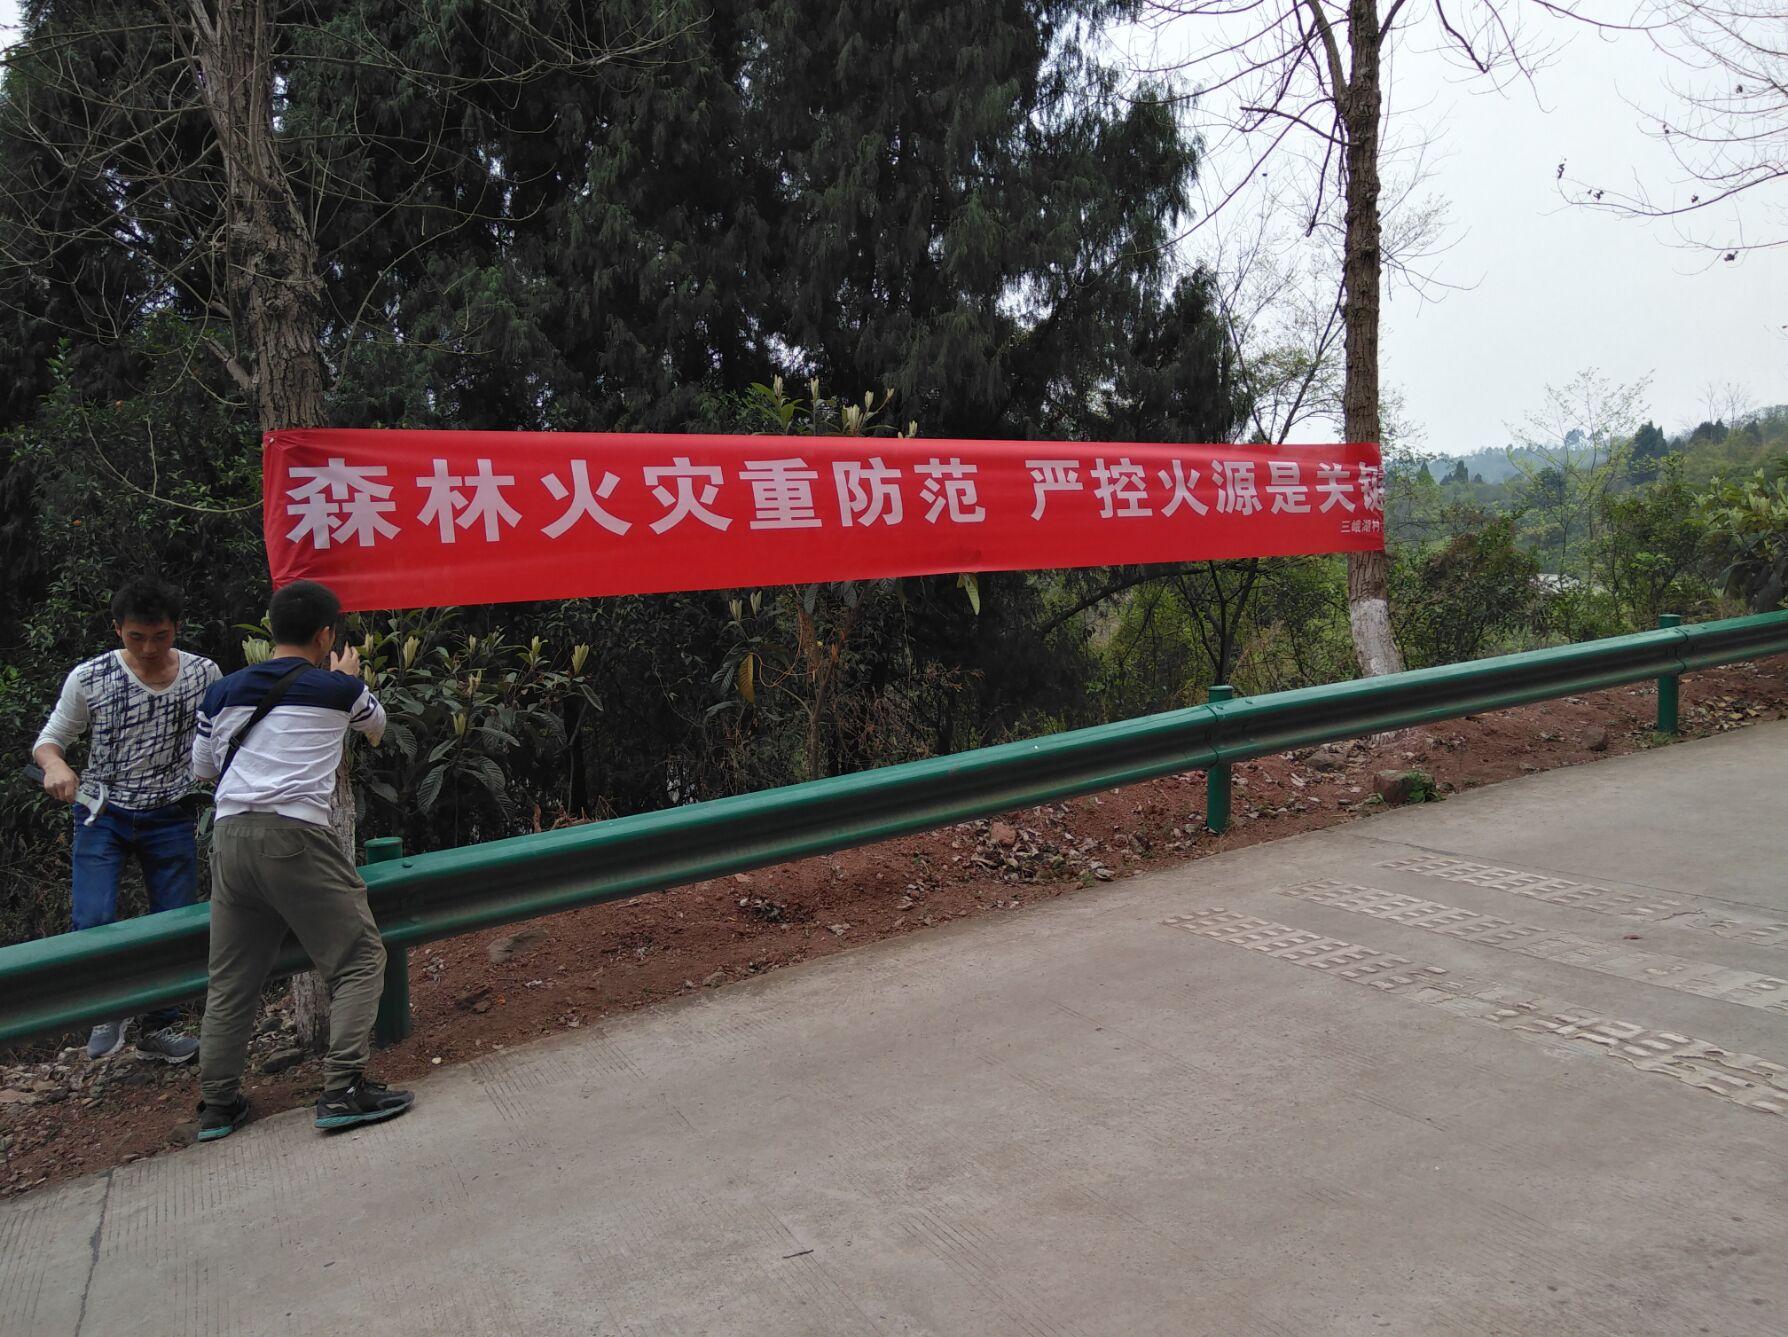 村寨防火宣传标语图片